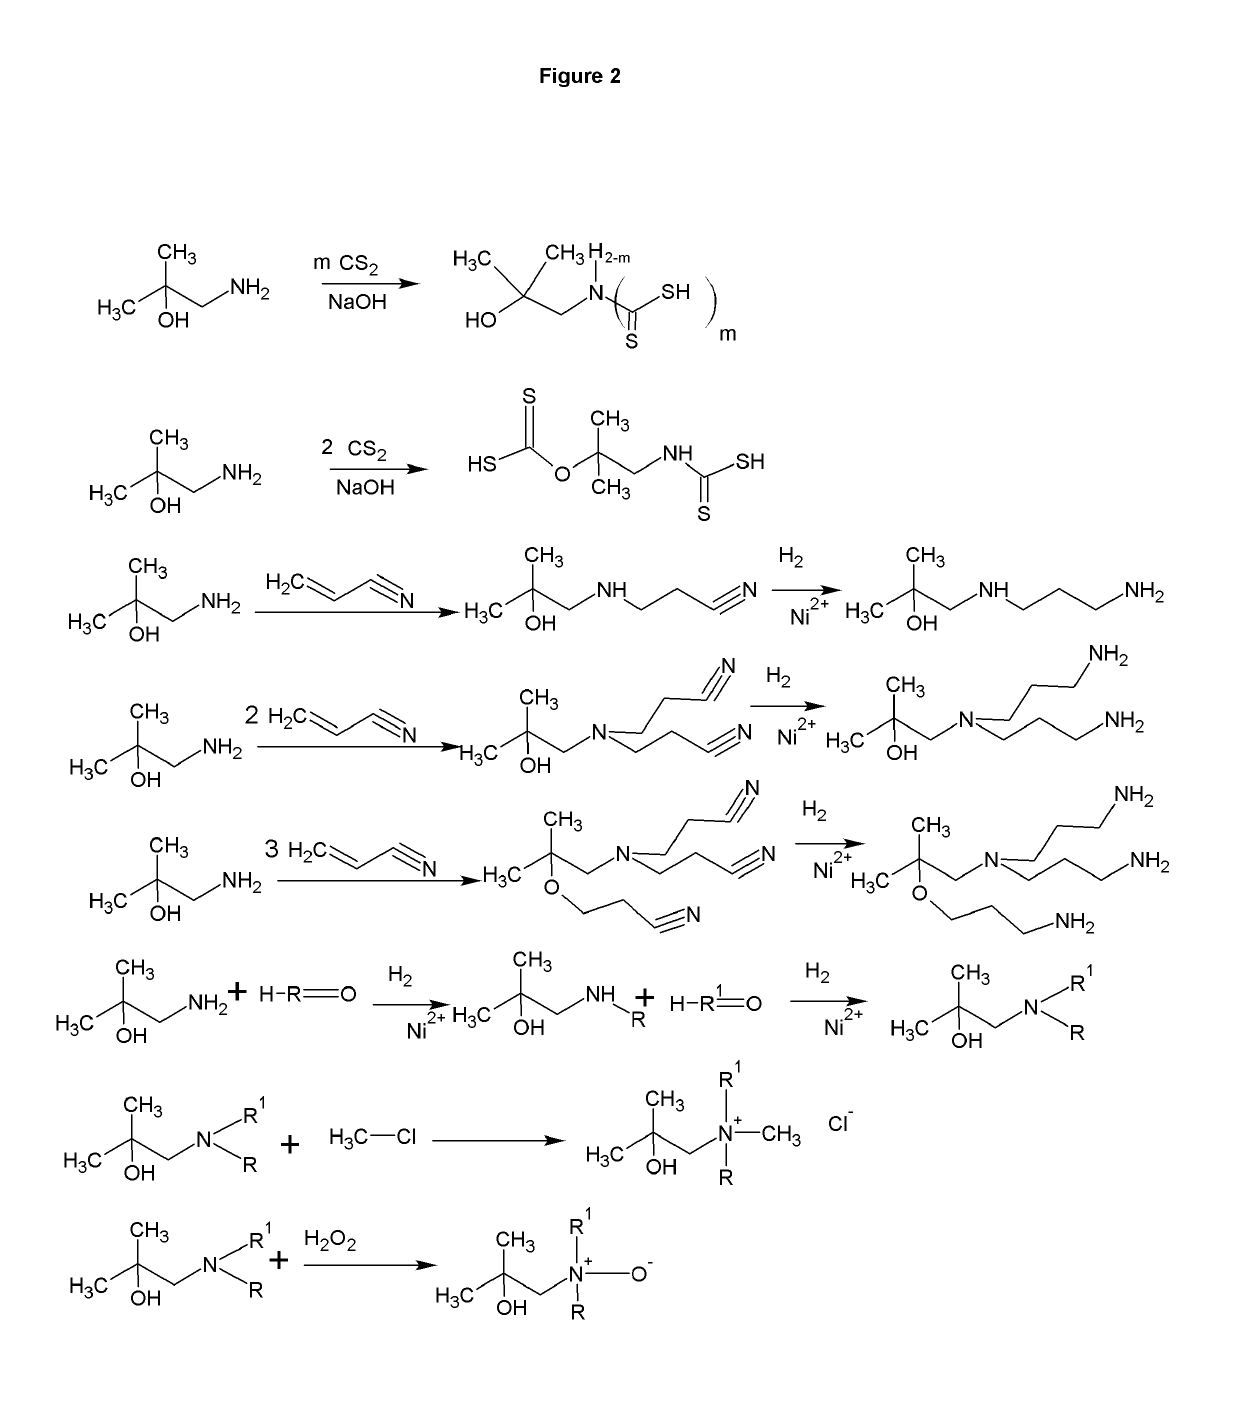 1-amino-2-methyl-2-propanol derivatives